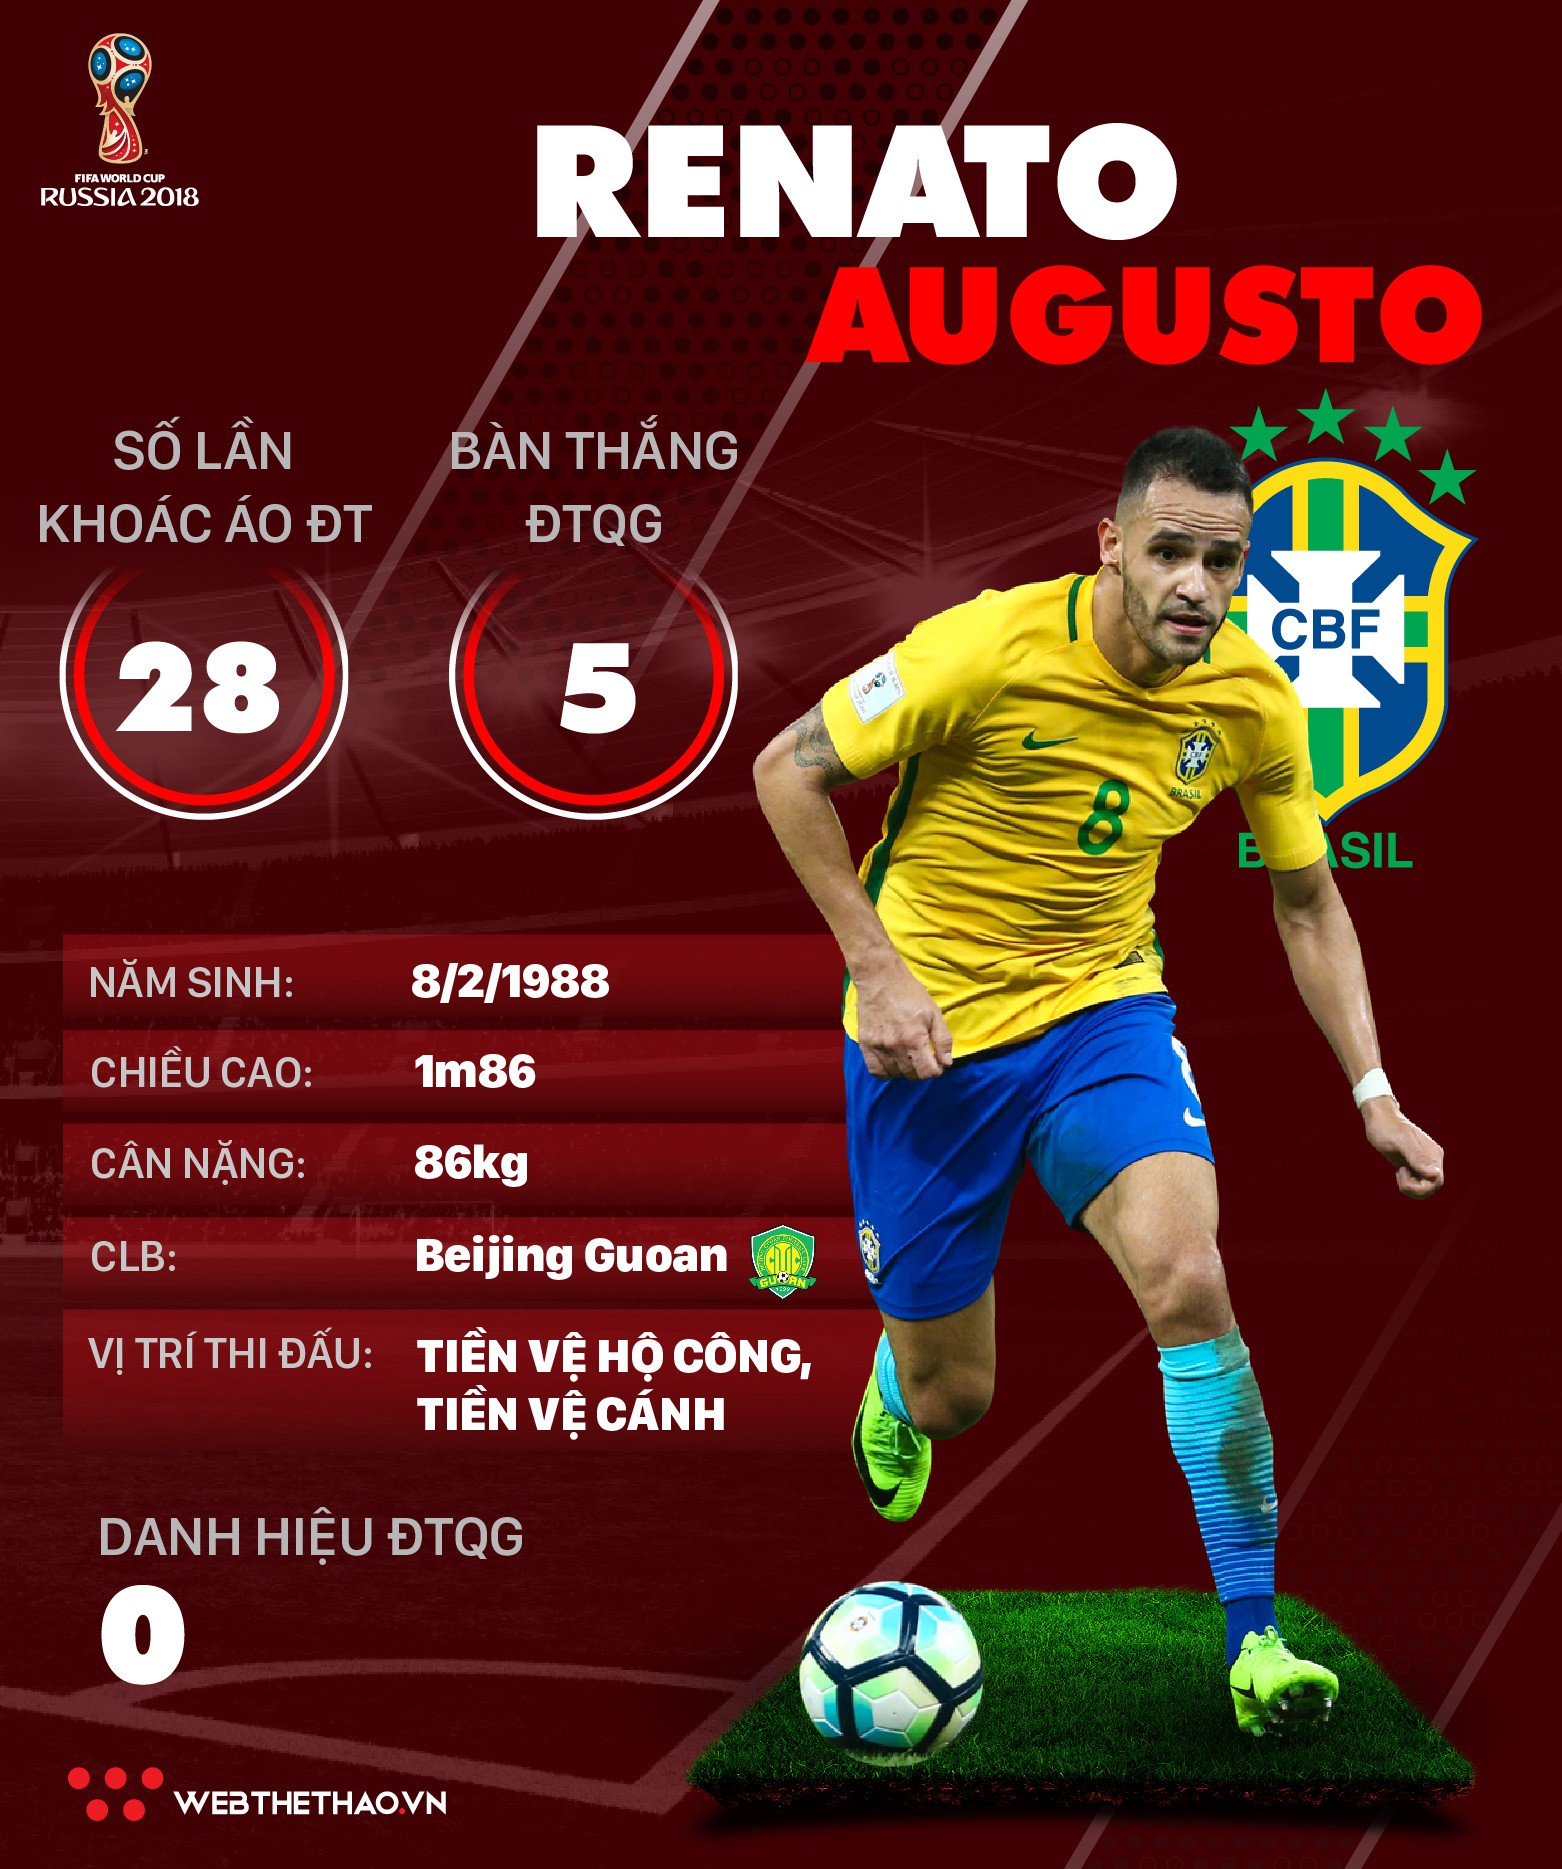 Thông tin cầu thủ Renato Augusto của ĐT Brazil dự World Cup 2018